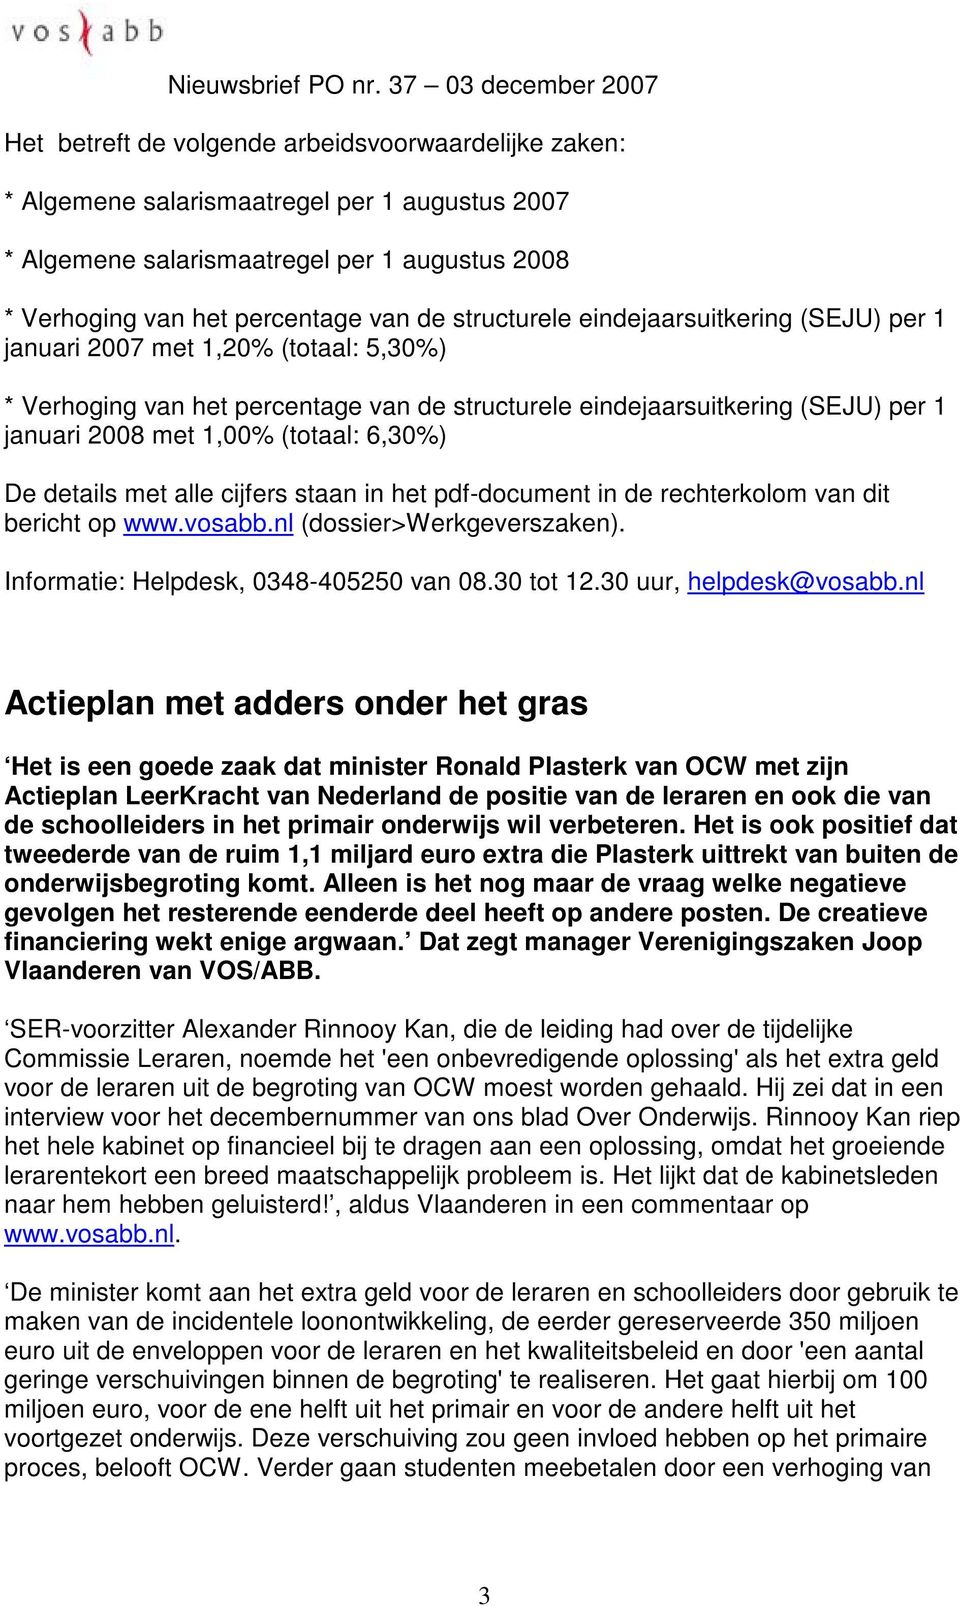 details met alle cijfers staan in het pdf-document in de rechterkolom van dit bericht op www.vosabb.nl (dossier>werkgeverszaken). Informatie: Helpdesk, 0348-405250 van 08.30 tot 12.